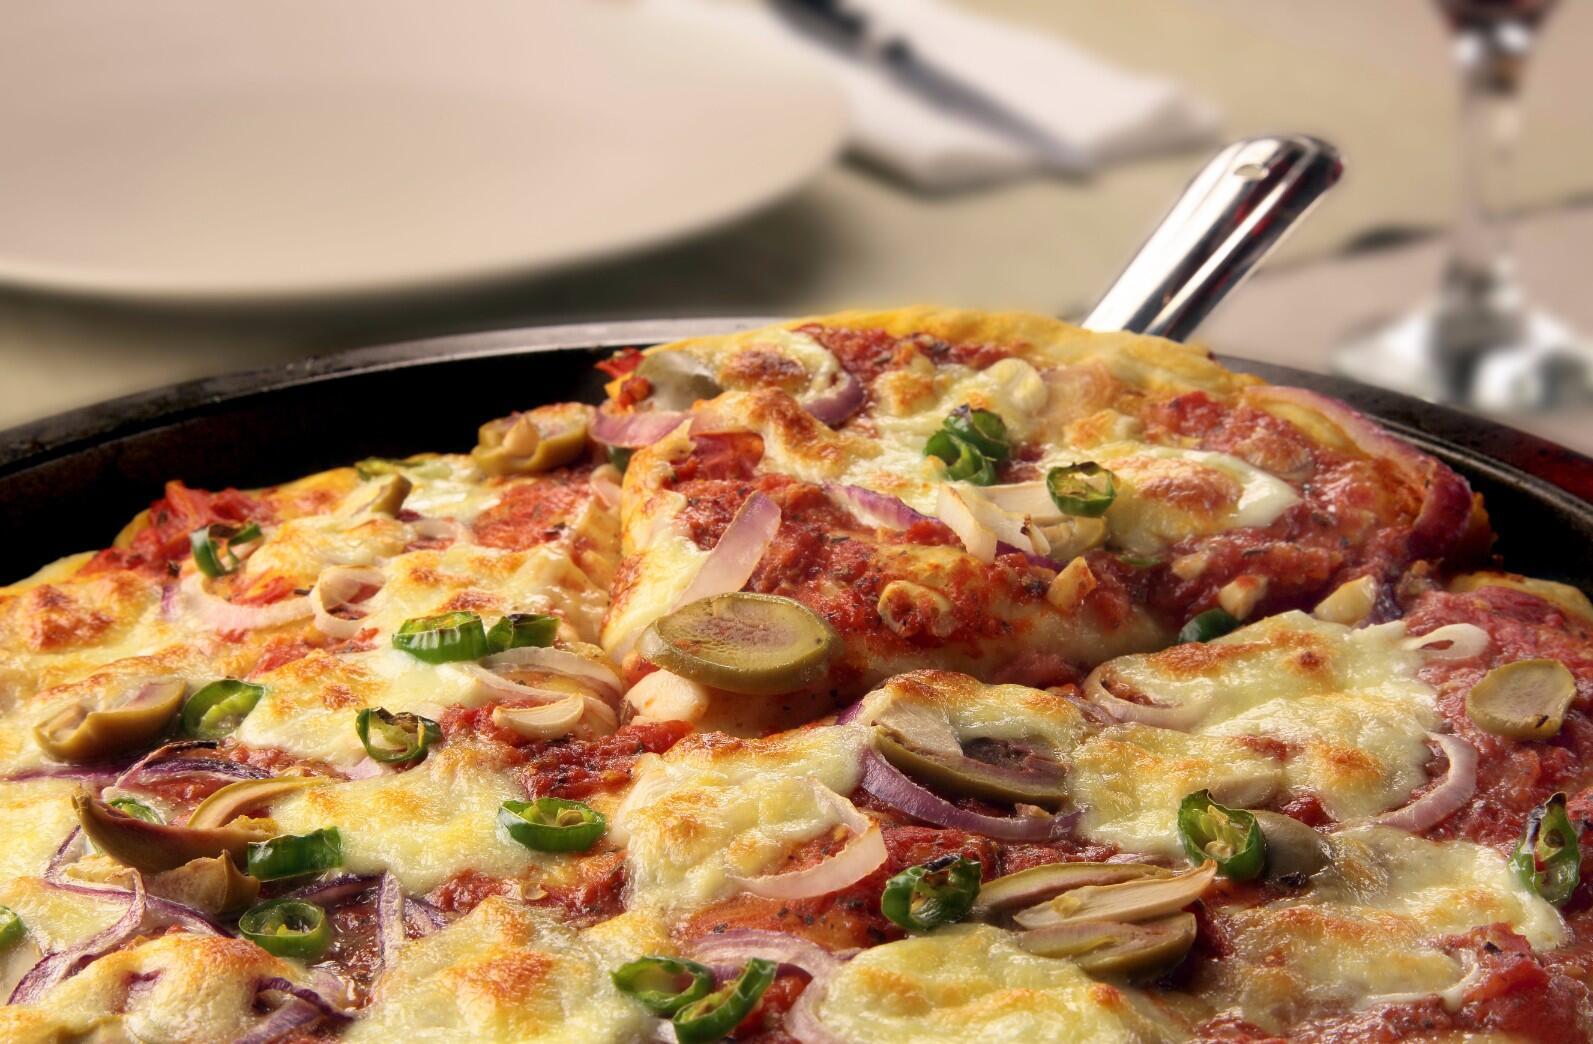 Neden her zaman büyük boy pizza sipariş etmelisiniz? Cevabı matematik